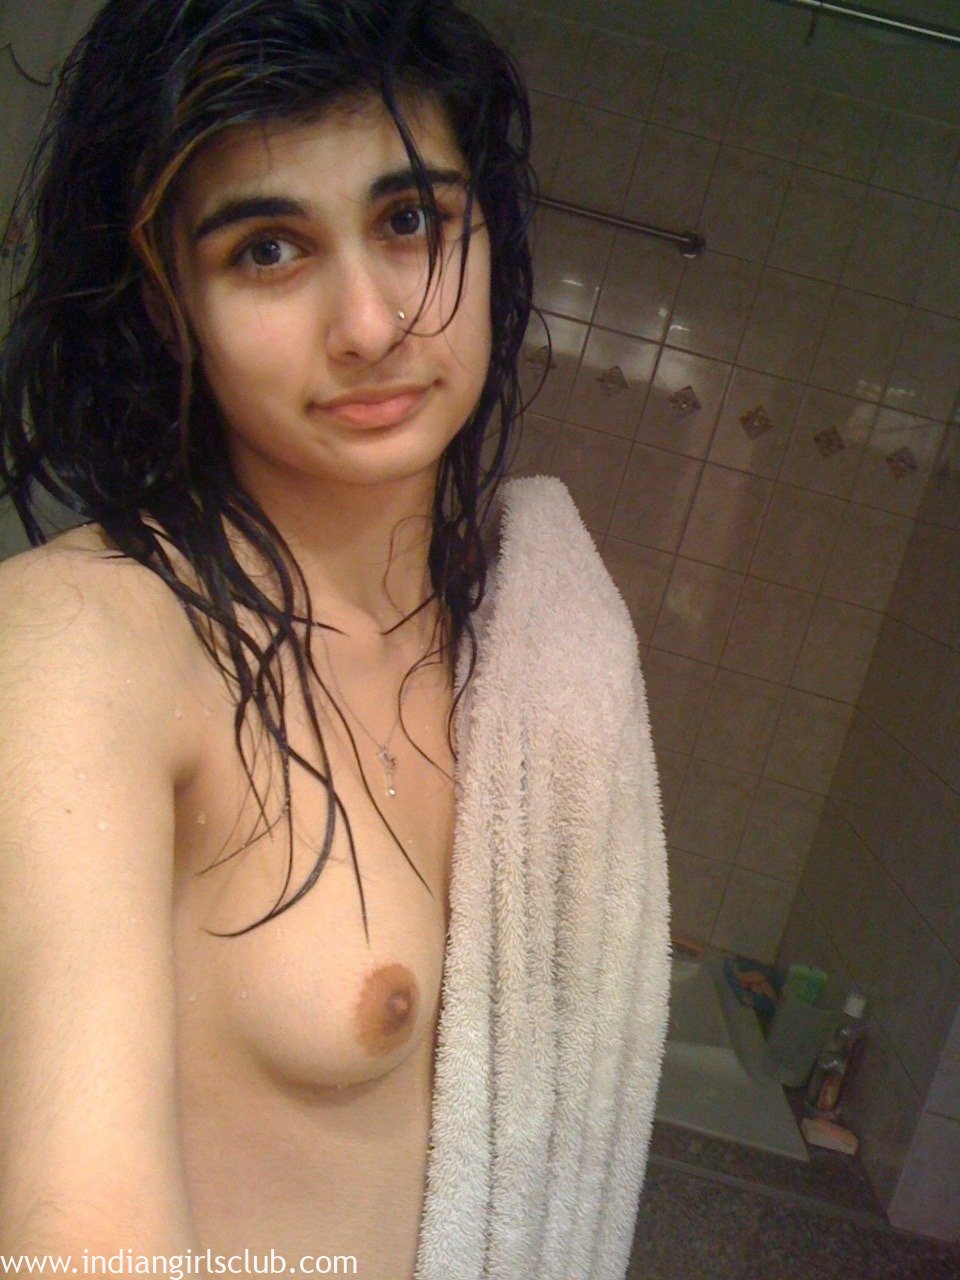 Beautiful Pakistani Indian Girls Nude - Sexy Beautiful Pakistani Girl Nude - Indian Girls Club